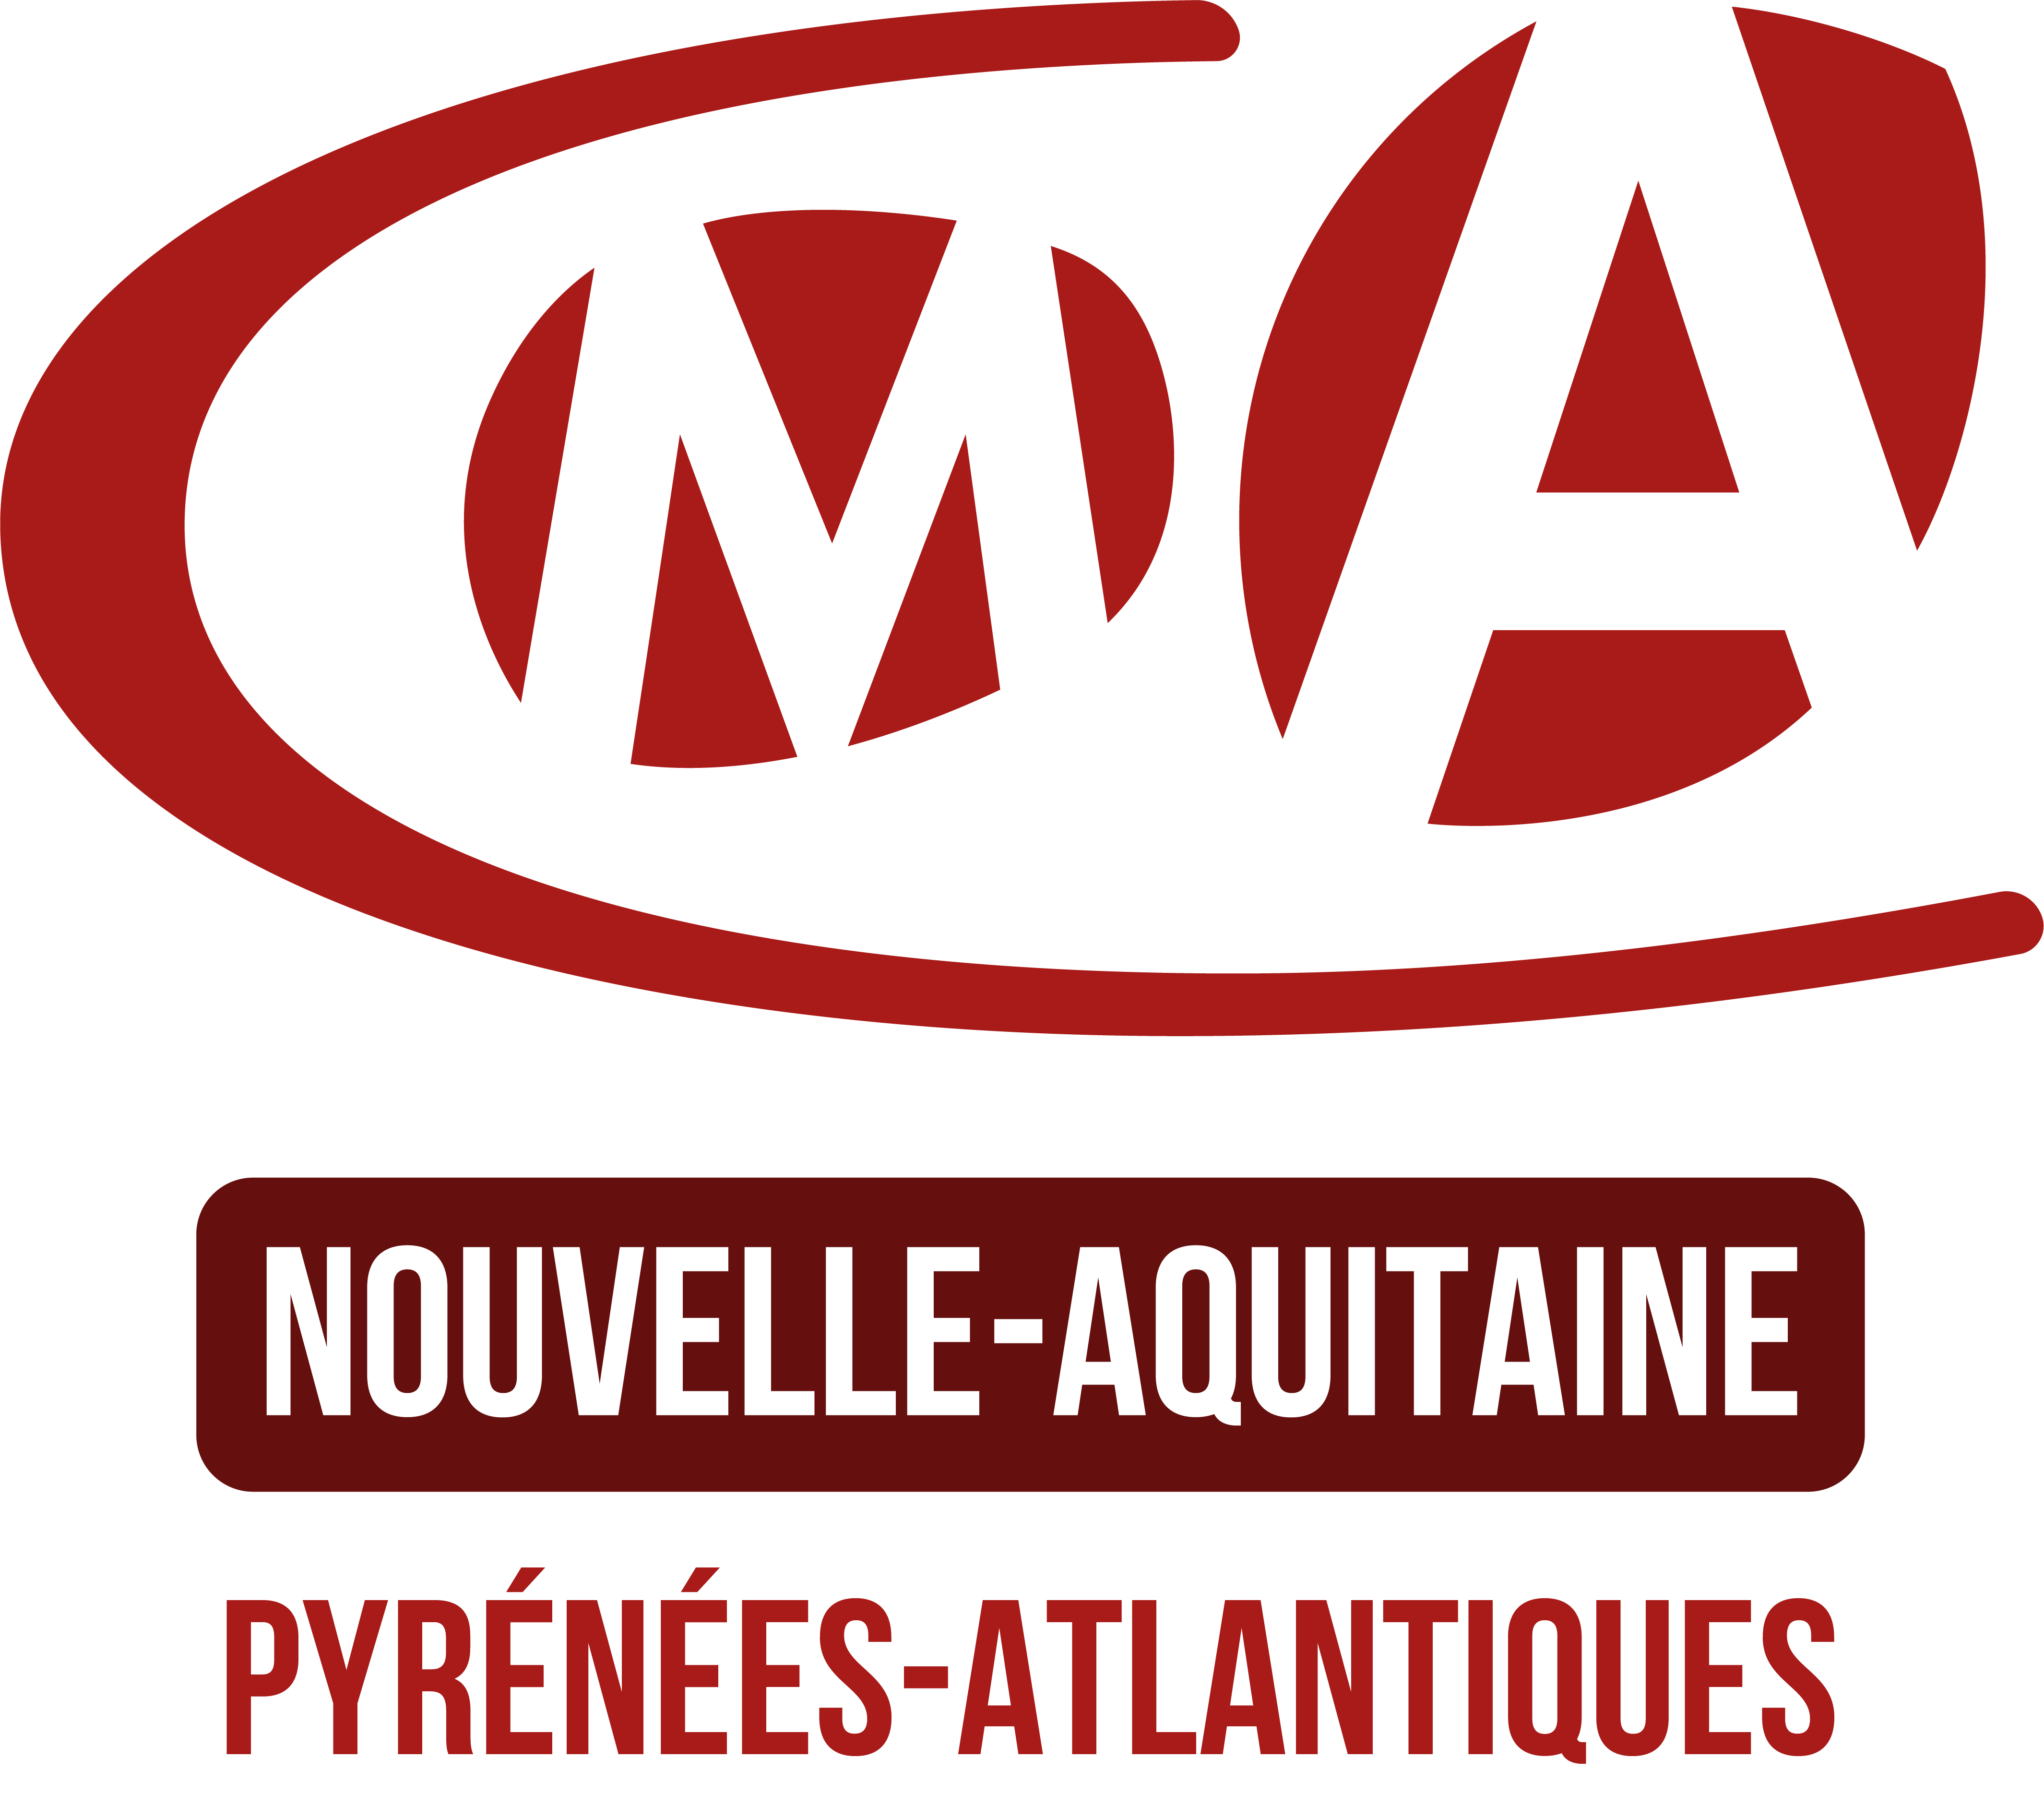 Chambre de métiers et de l'artisanat des Pyrénées-Atlantiques (BAYONNE)